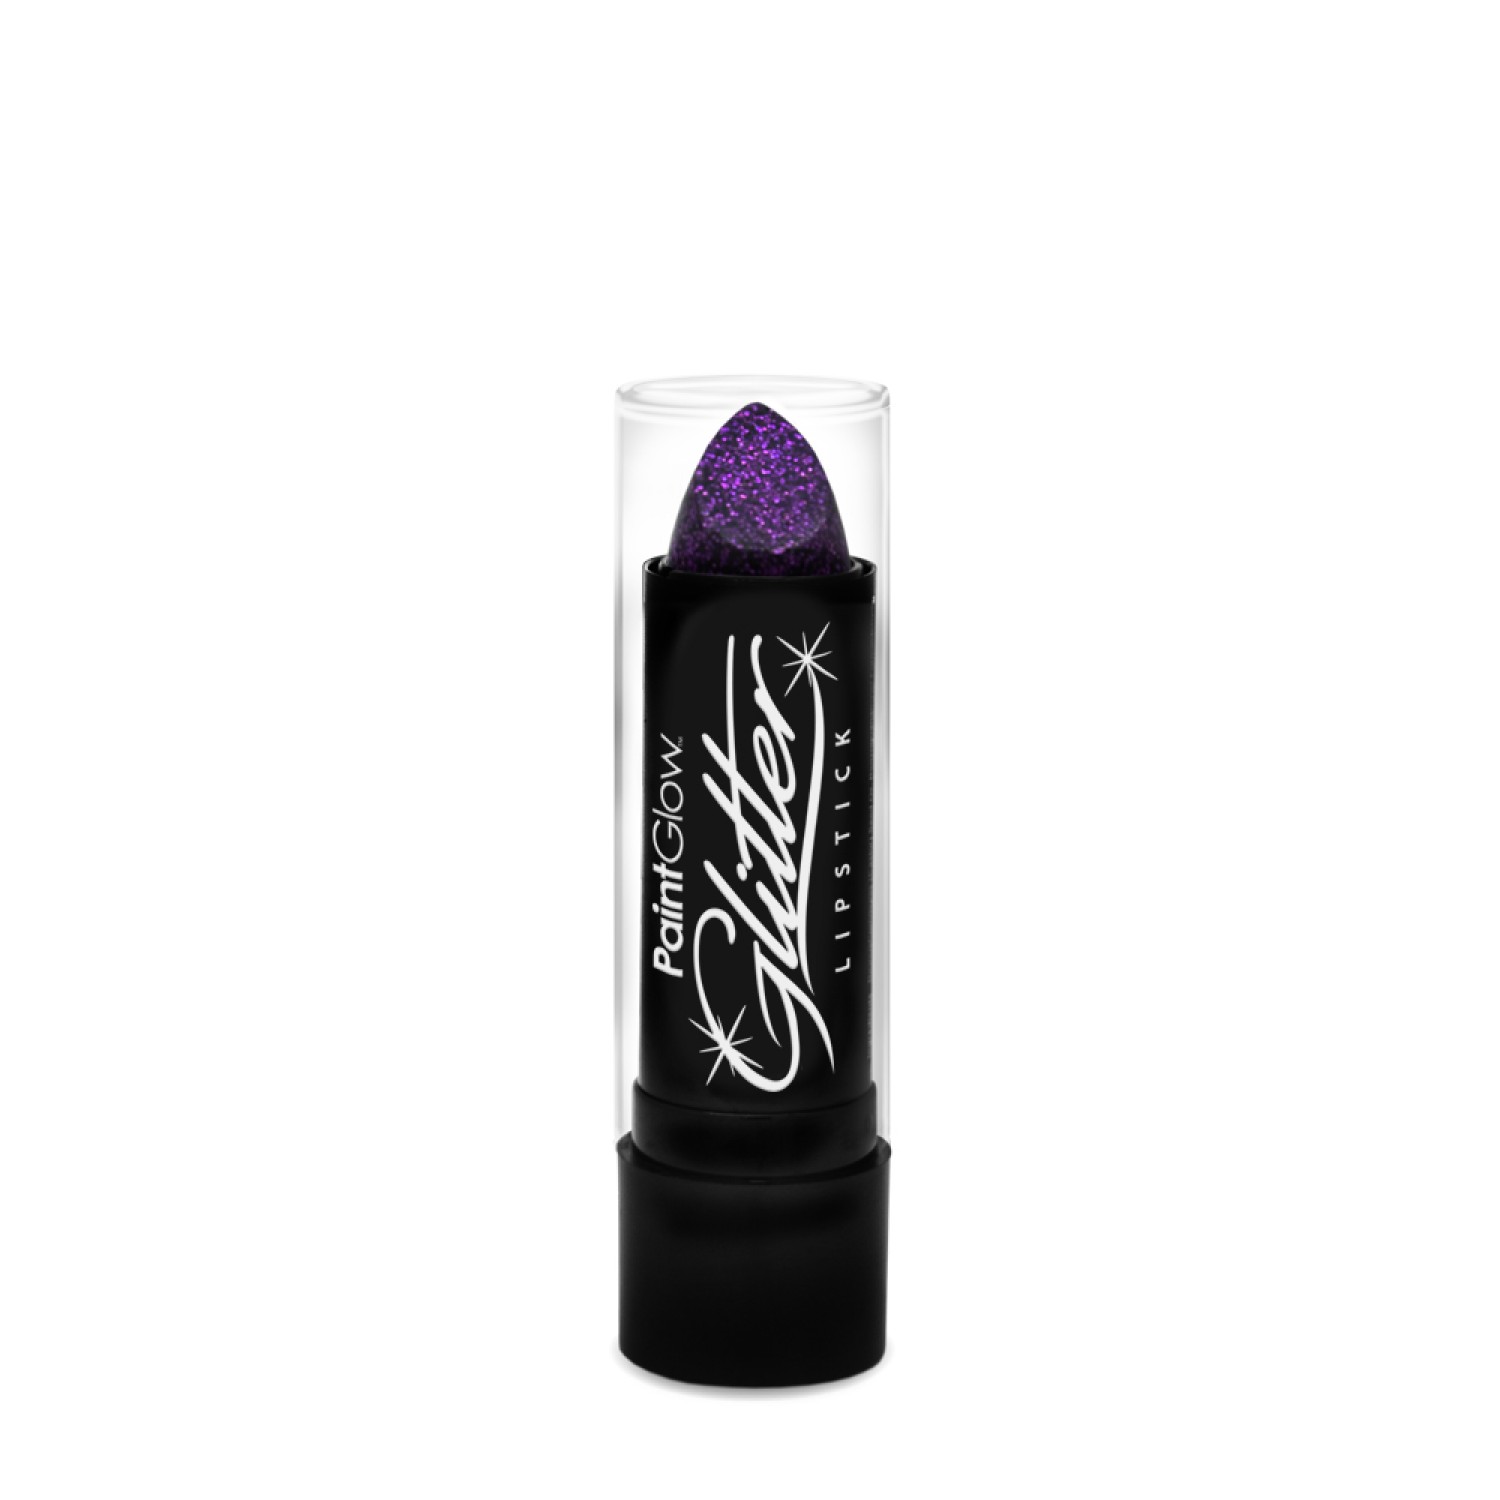 Glitter Lipstick